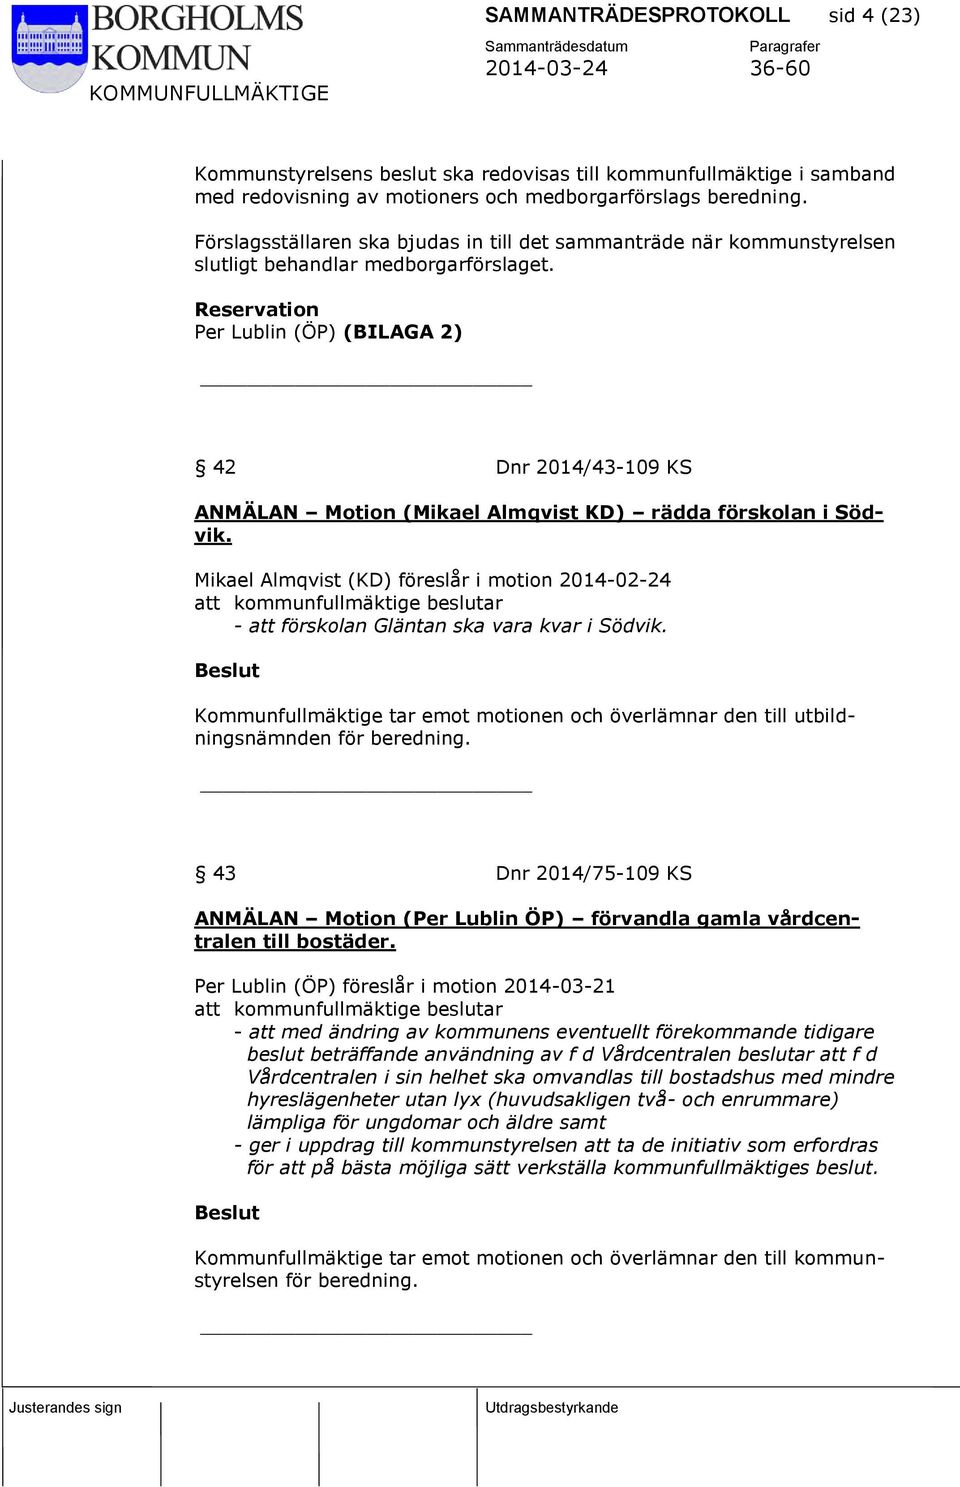 Reservation Per Lublin (ÖP) (BILAGA 2) 42 Dnr 2014/43-109 KS ANMÄLAN Motion (Mikael Almqvist KD) rädda förskolan i Södvik.